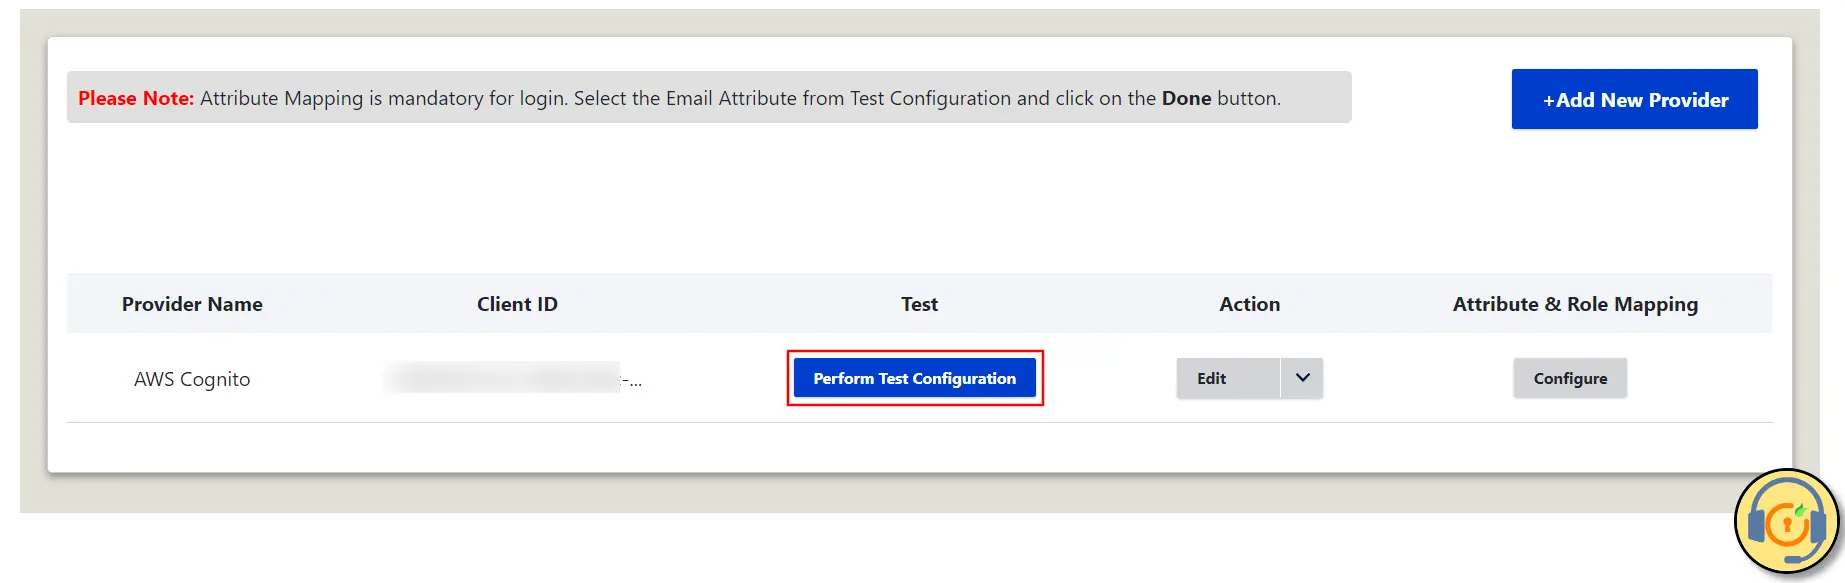 Drupal OAuth OpenID Single Single On Haga clic en el botón Realizar configuración de prueba para verificar la conexión SSO